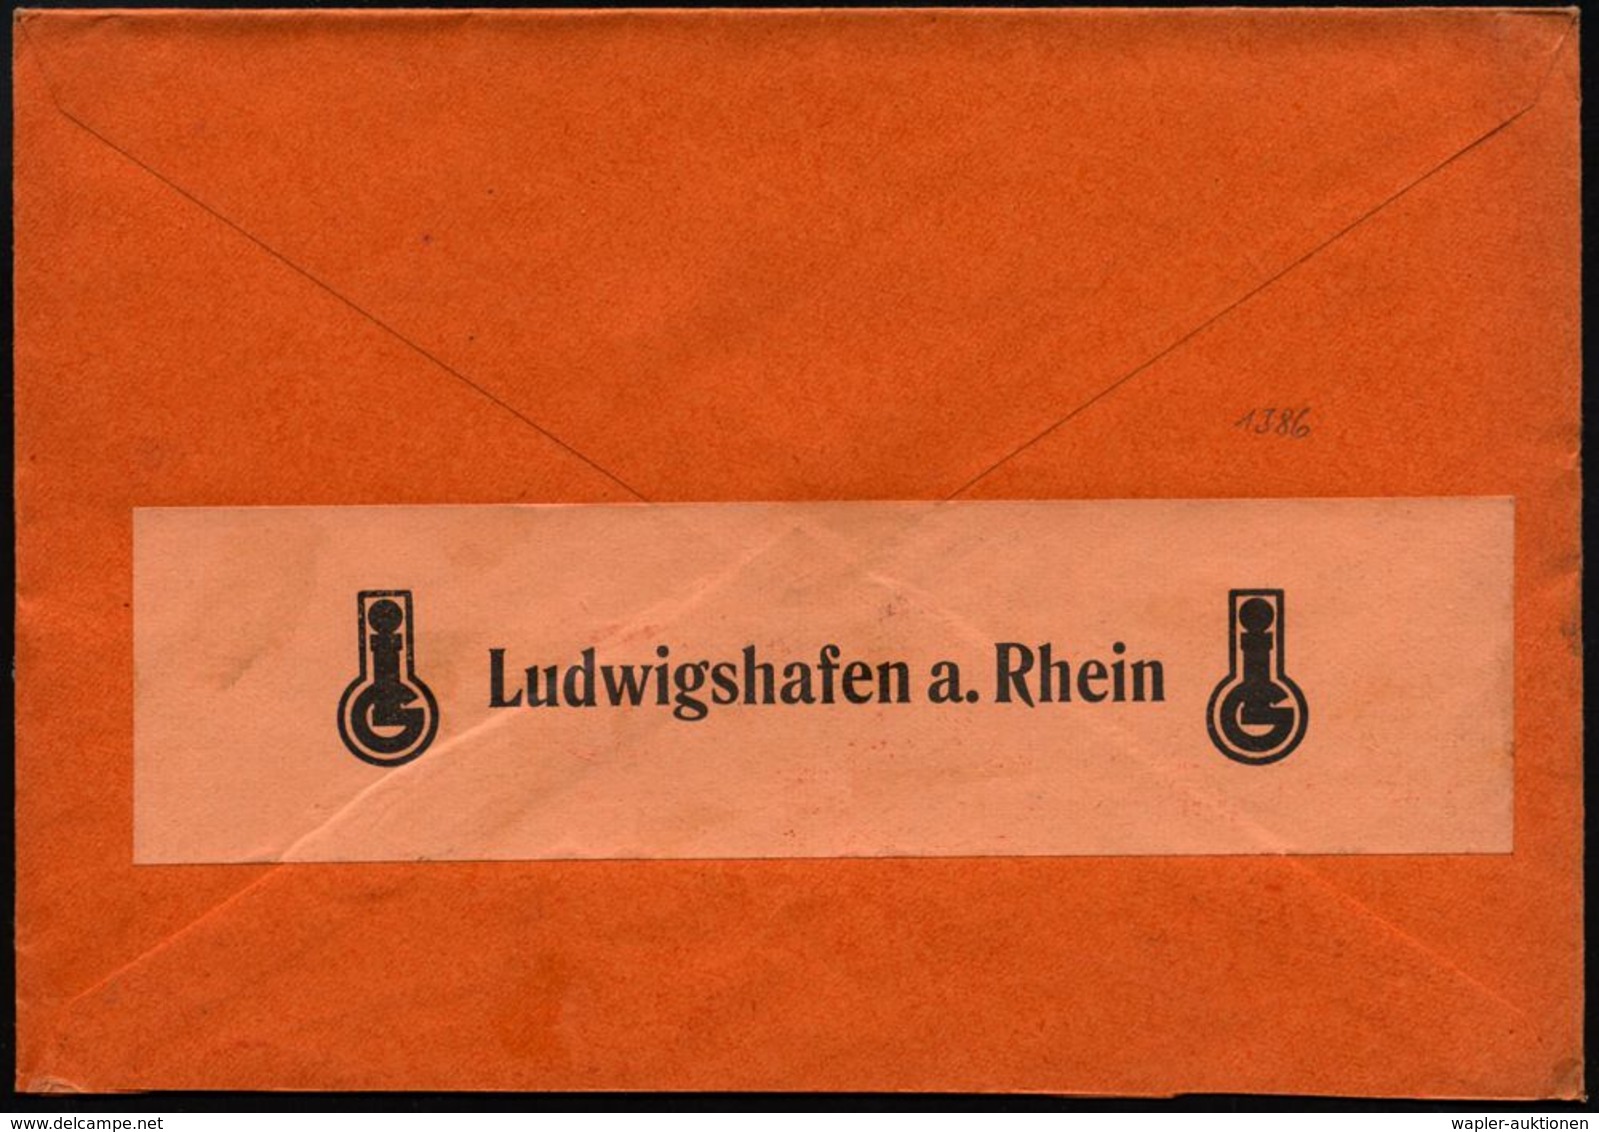 LUDWIGSHAFEN A.RHEIN/ 1/ Indanthren/ ..wetterecht/ I.G.Farbenindustrie/ AG 1933 (31.7.) AFS (Logo: Sonne/ Regenwolke) Or - Scheikunde